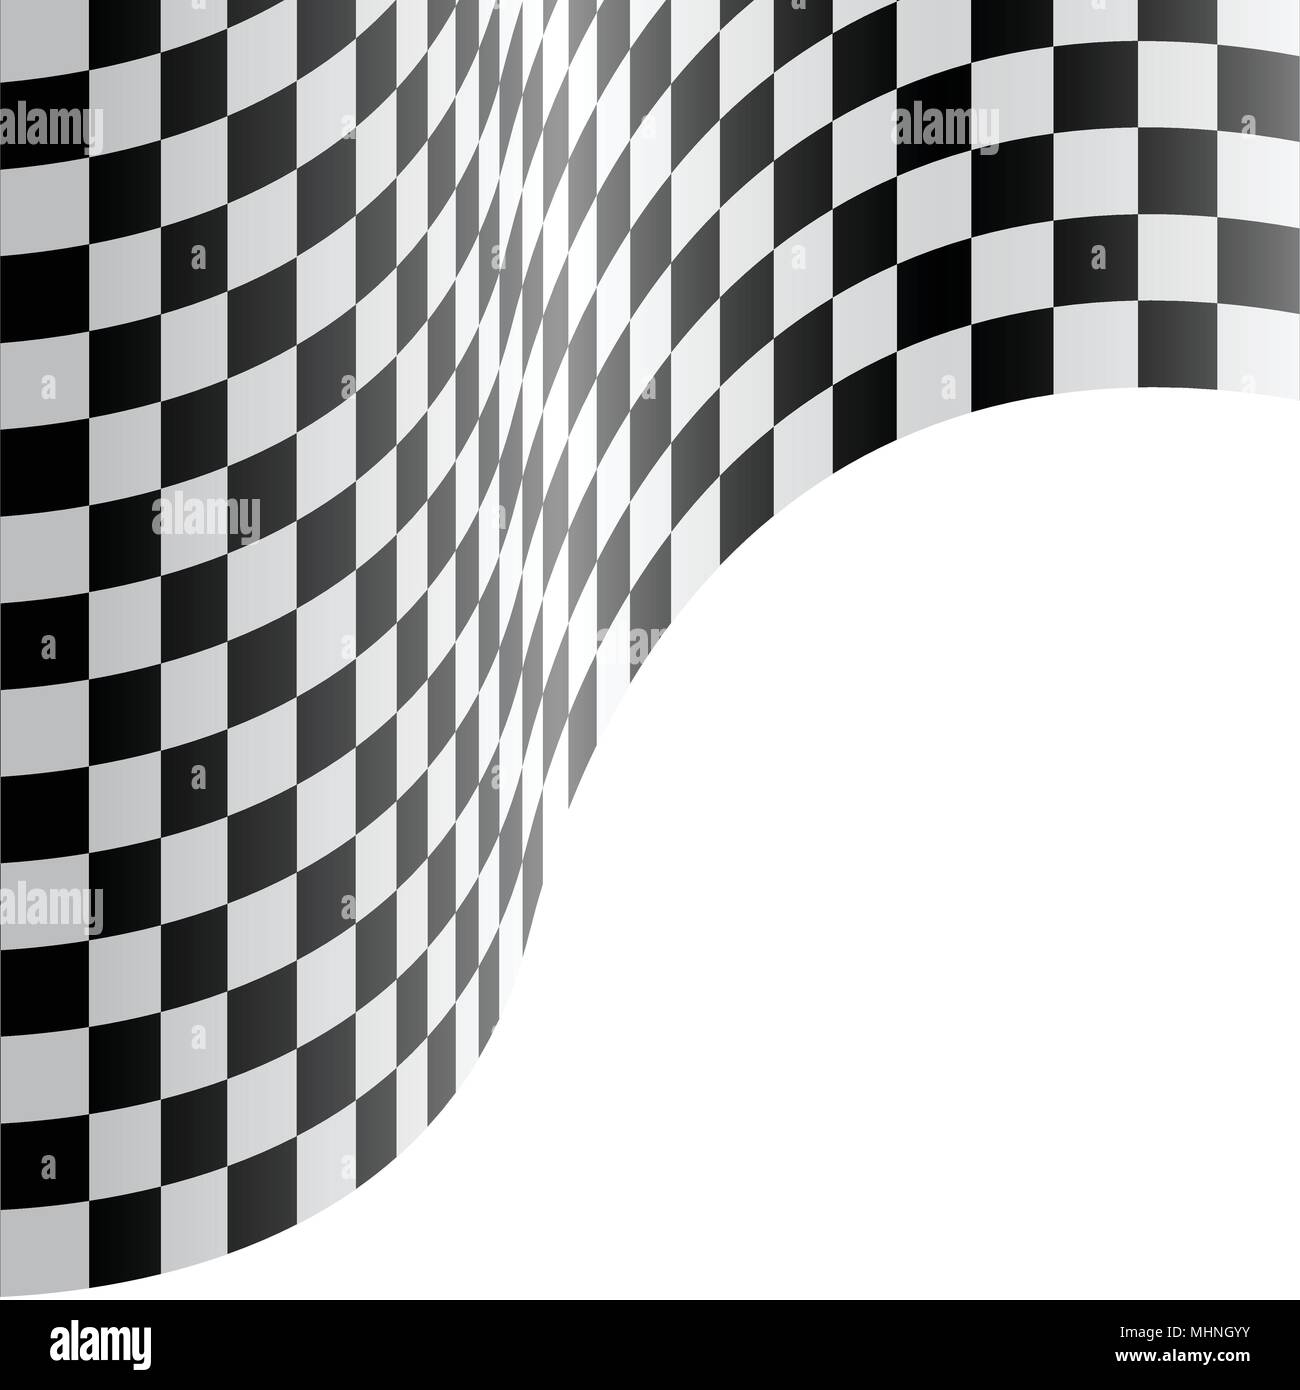 Zielflagge wave auf weißem Design race Hintergrund Vector Illustration. Stock Vektor